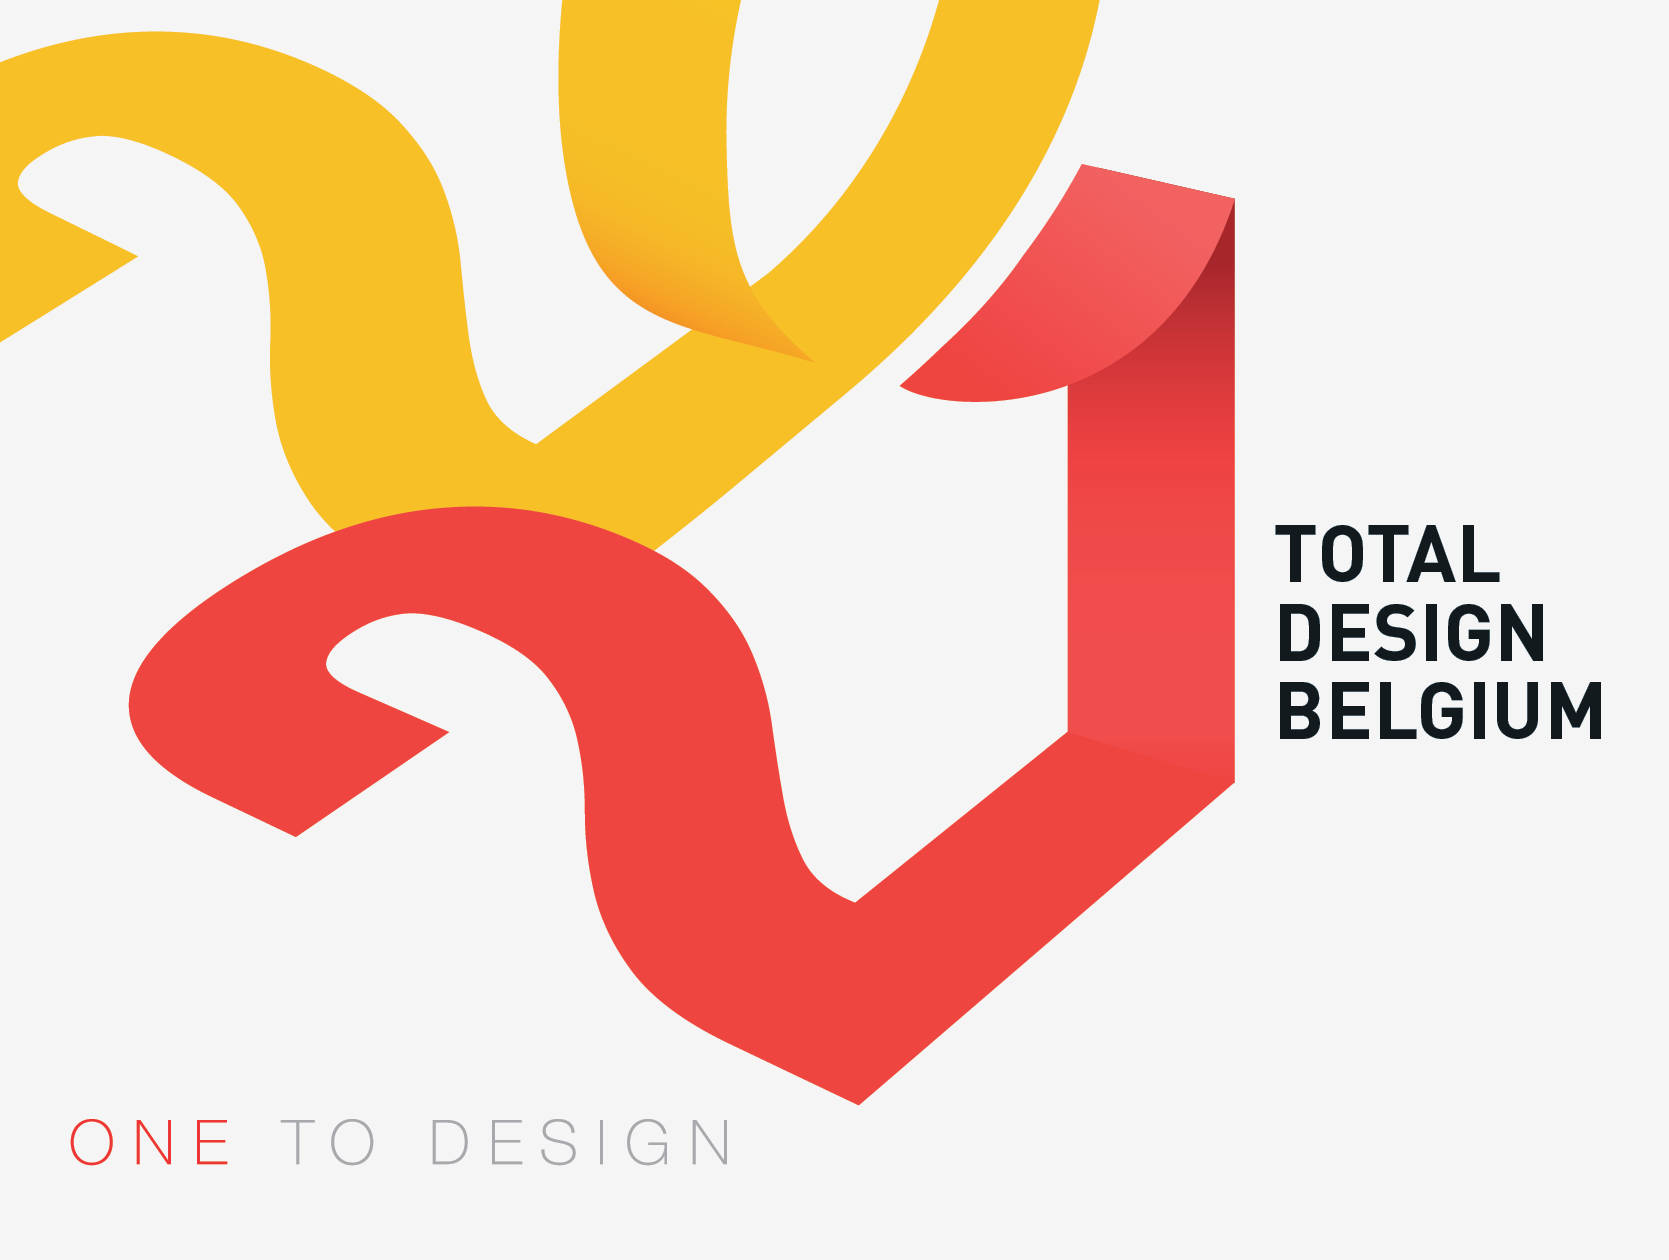 reclamebureau's Mechelen Total Design Belgium